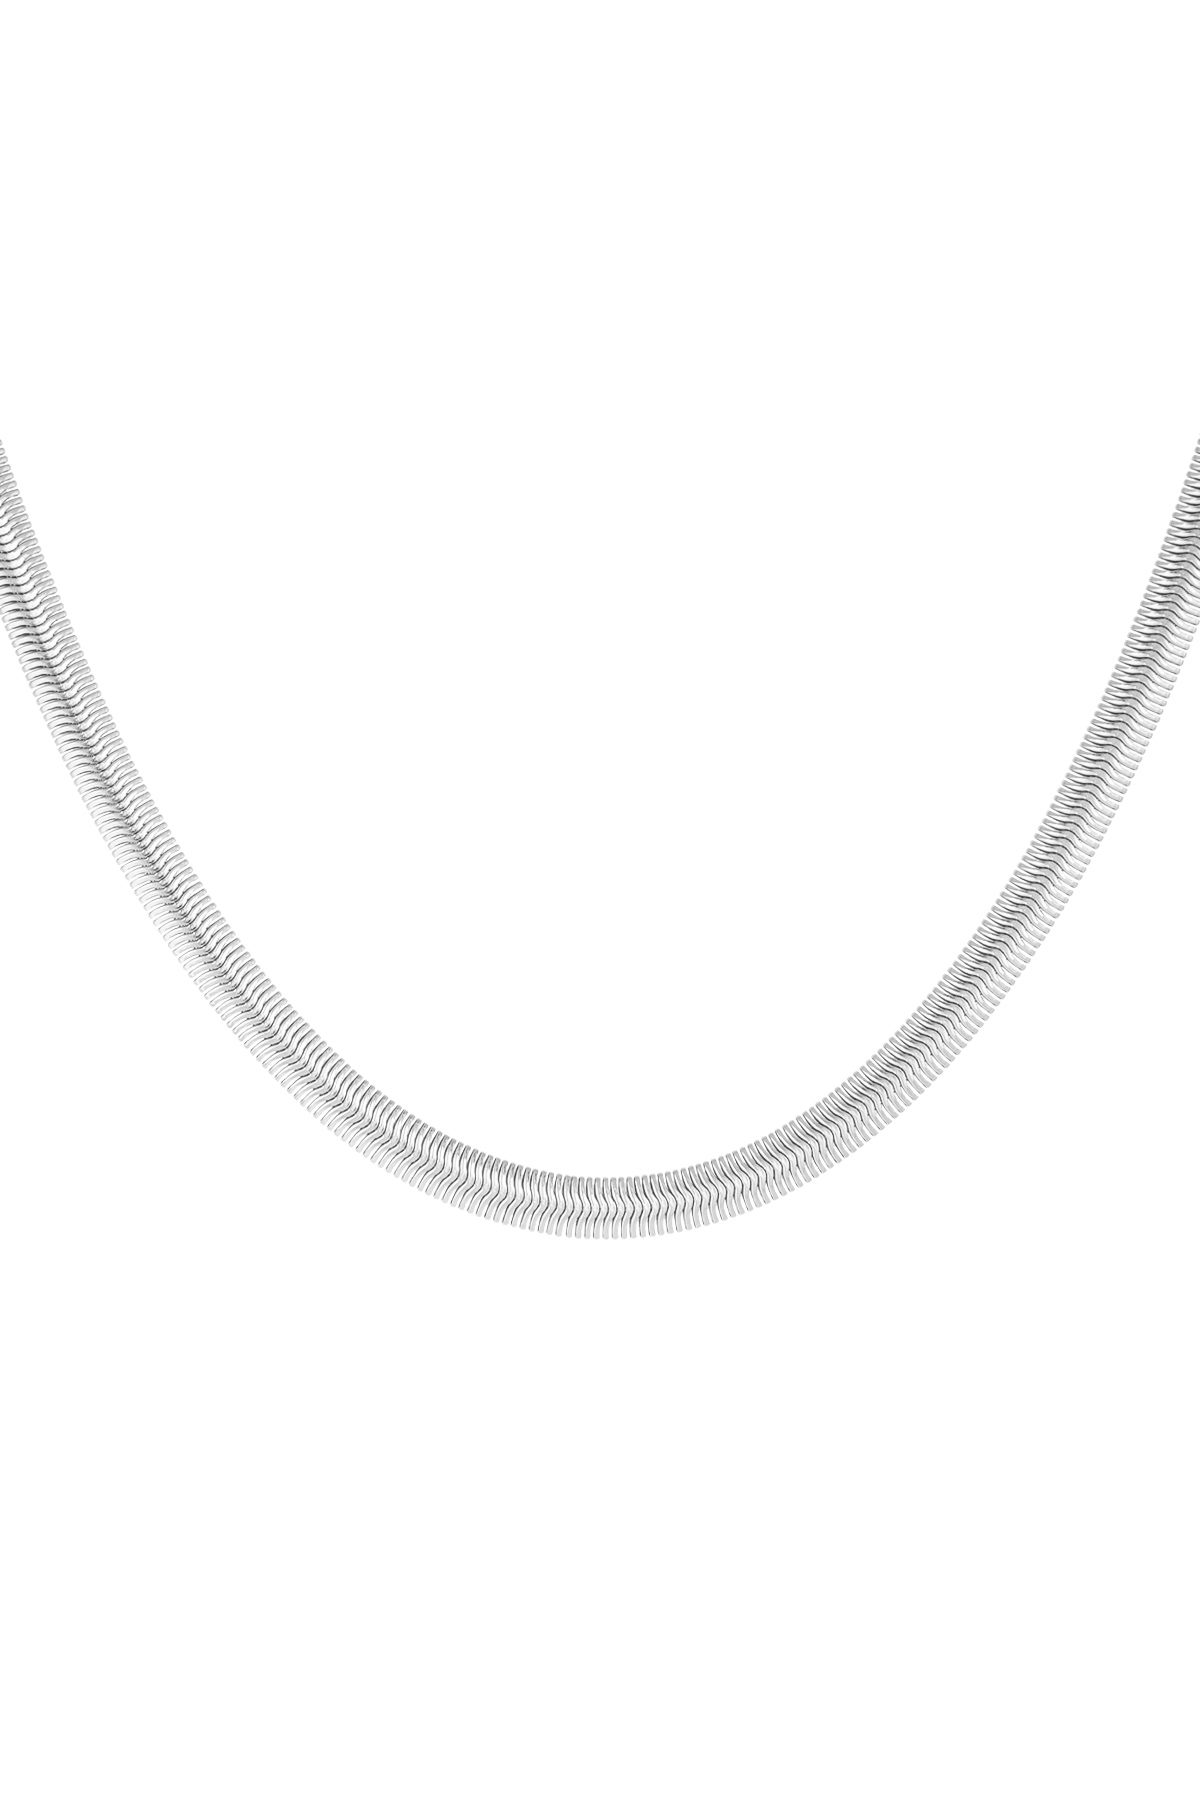 Collana piatta con stampa - argento-6.0MM h5 